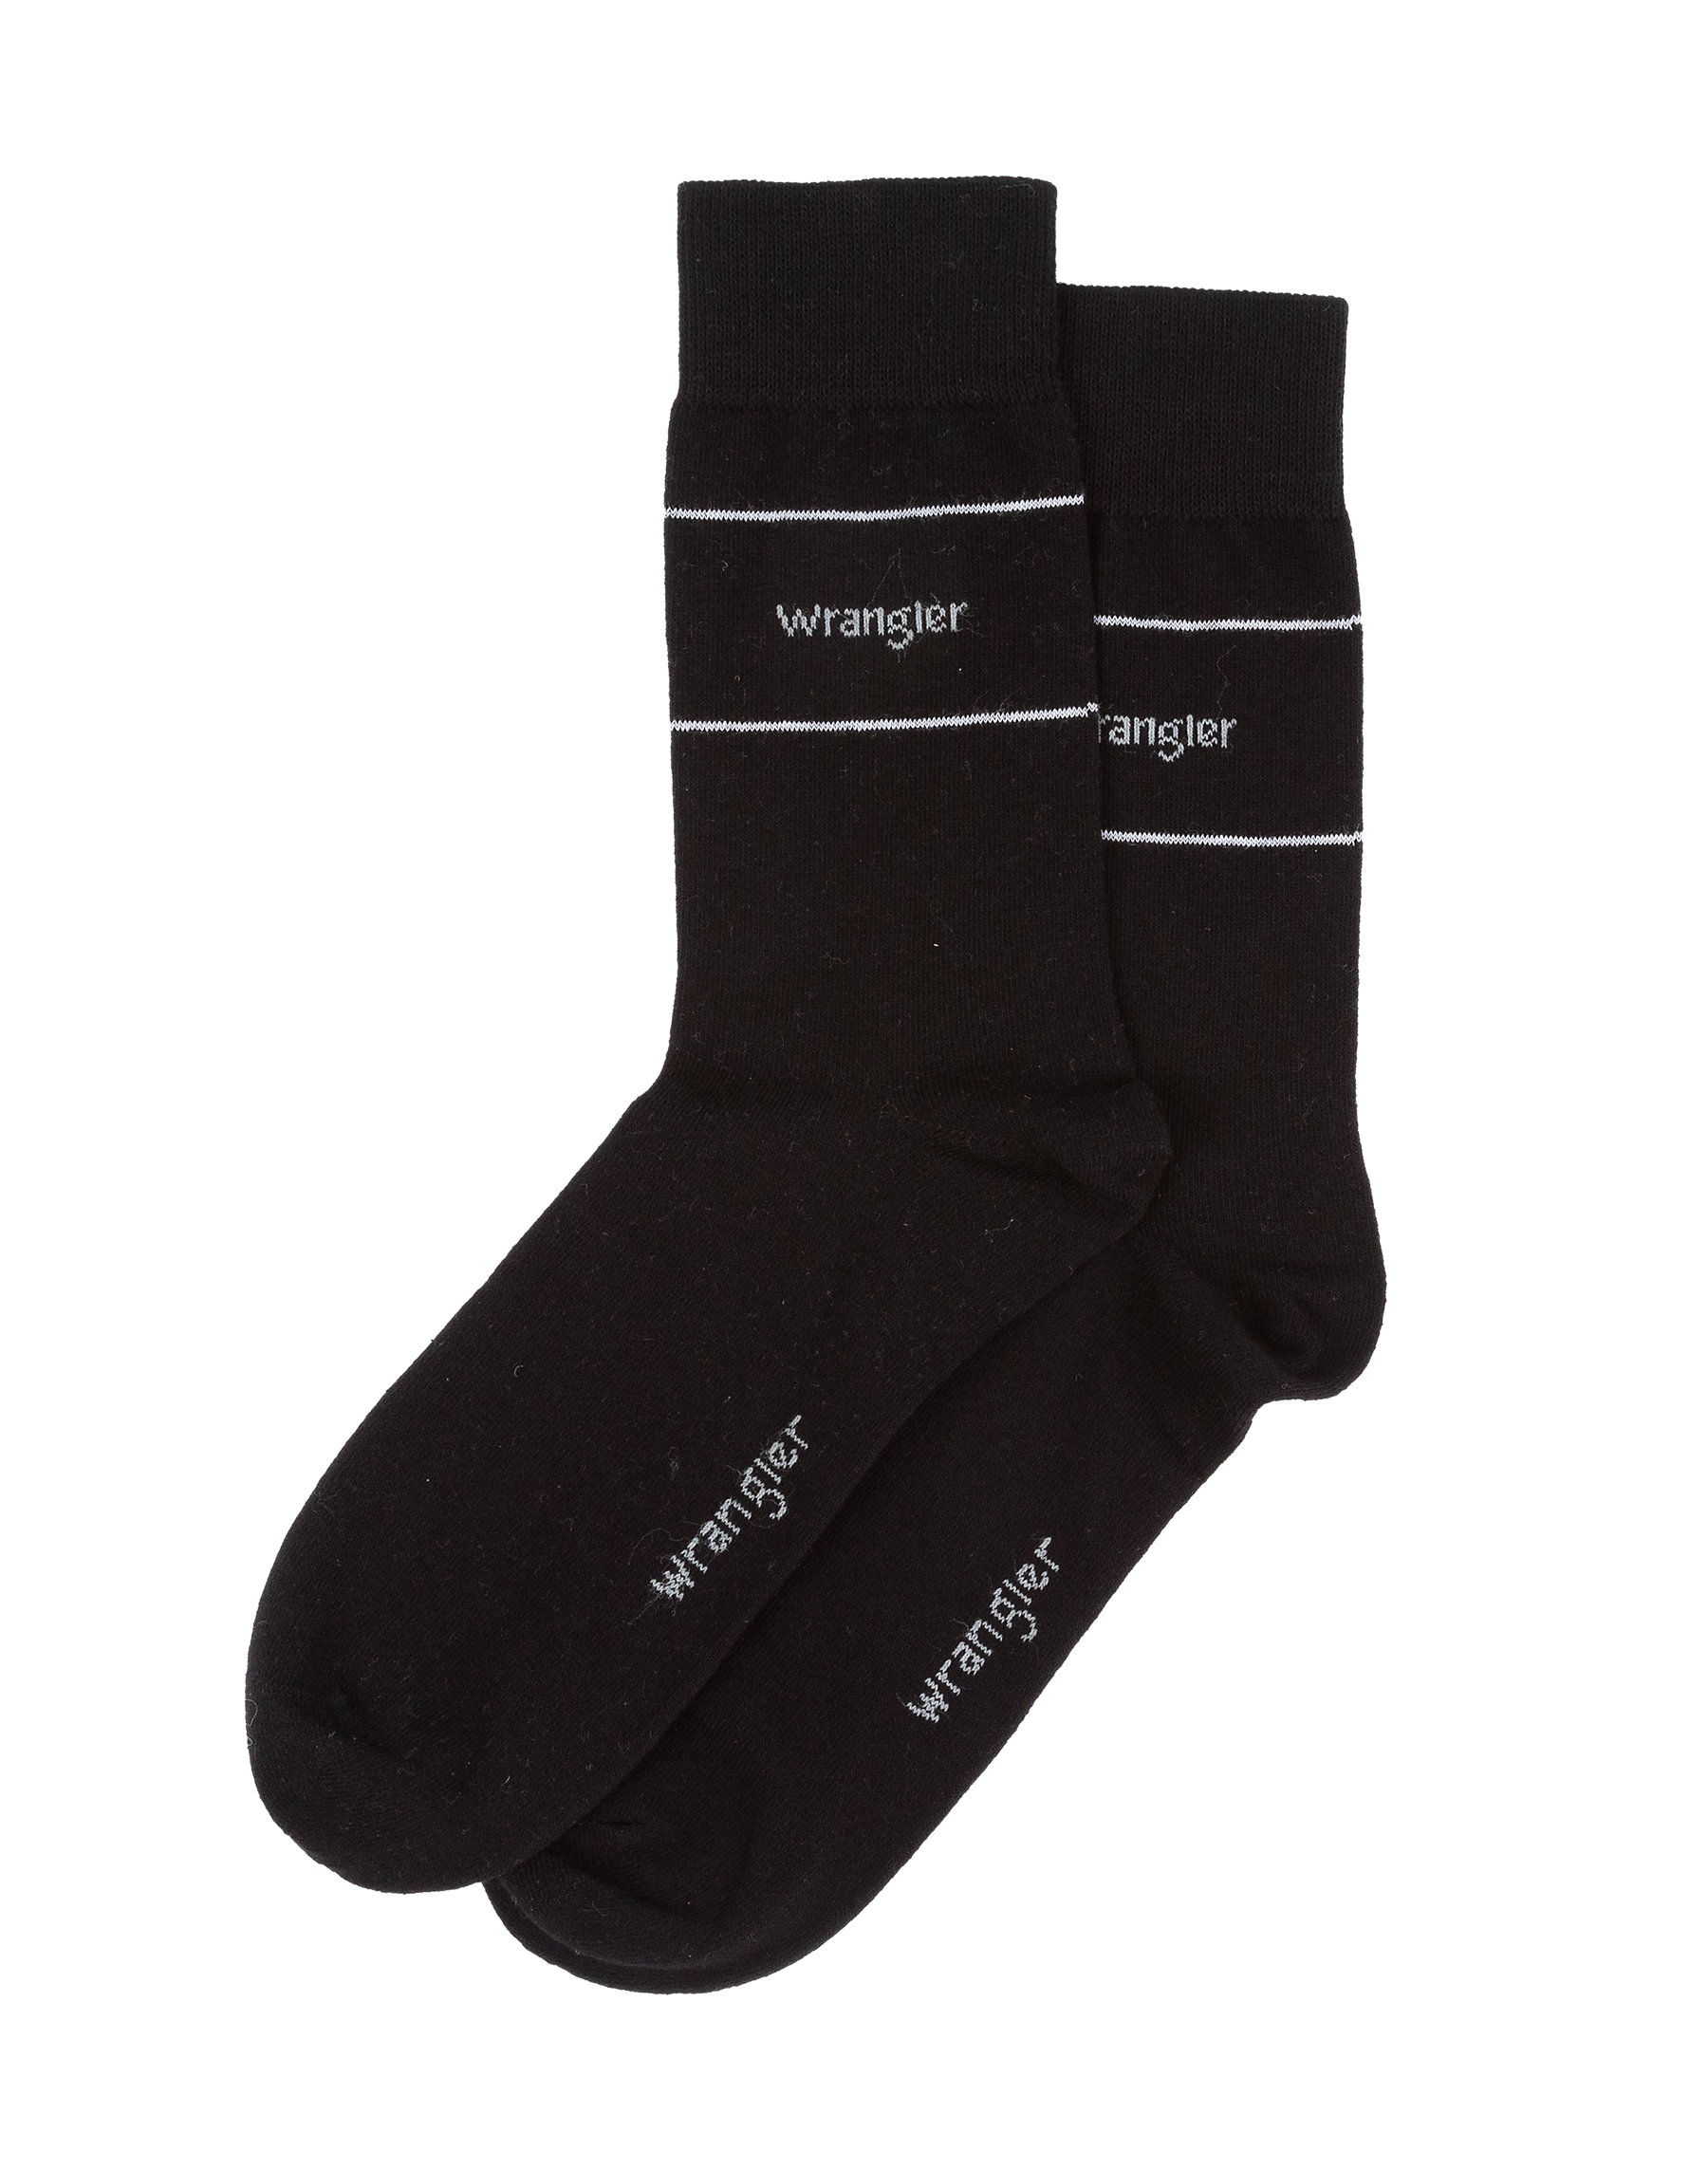 Pánské ponožky WRANGLER W0P511X06 2 páry černé a šedé vysoké Velikost: 35-38